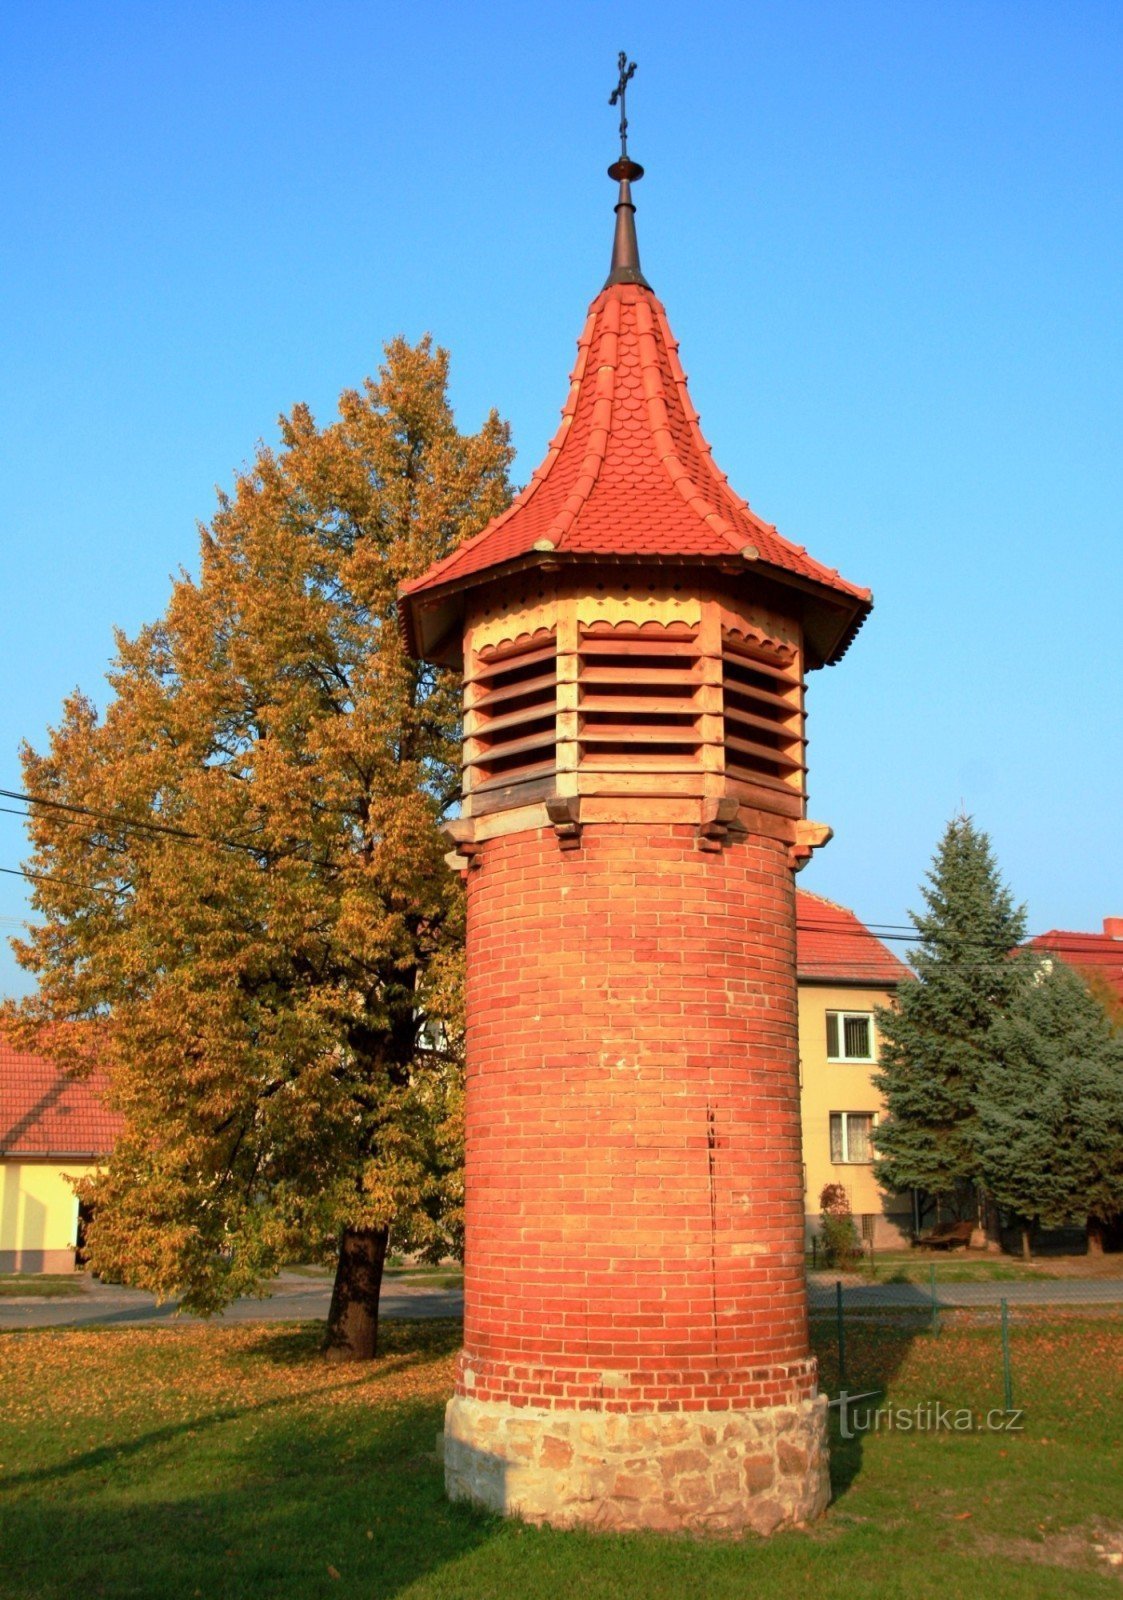 Nové Mlýny - bell tower in the village